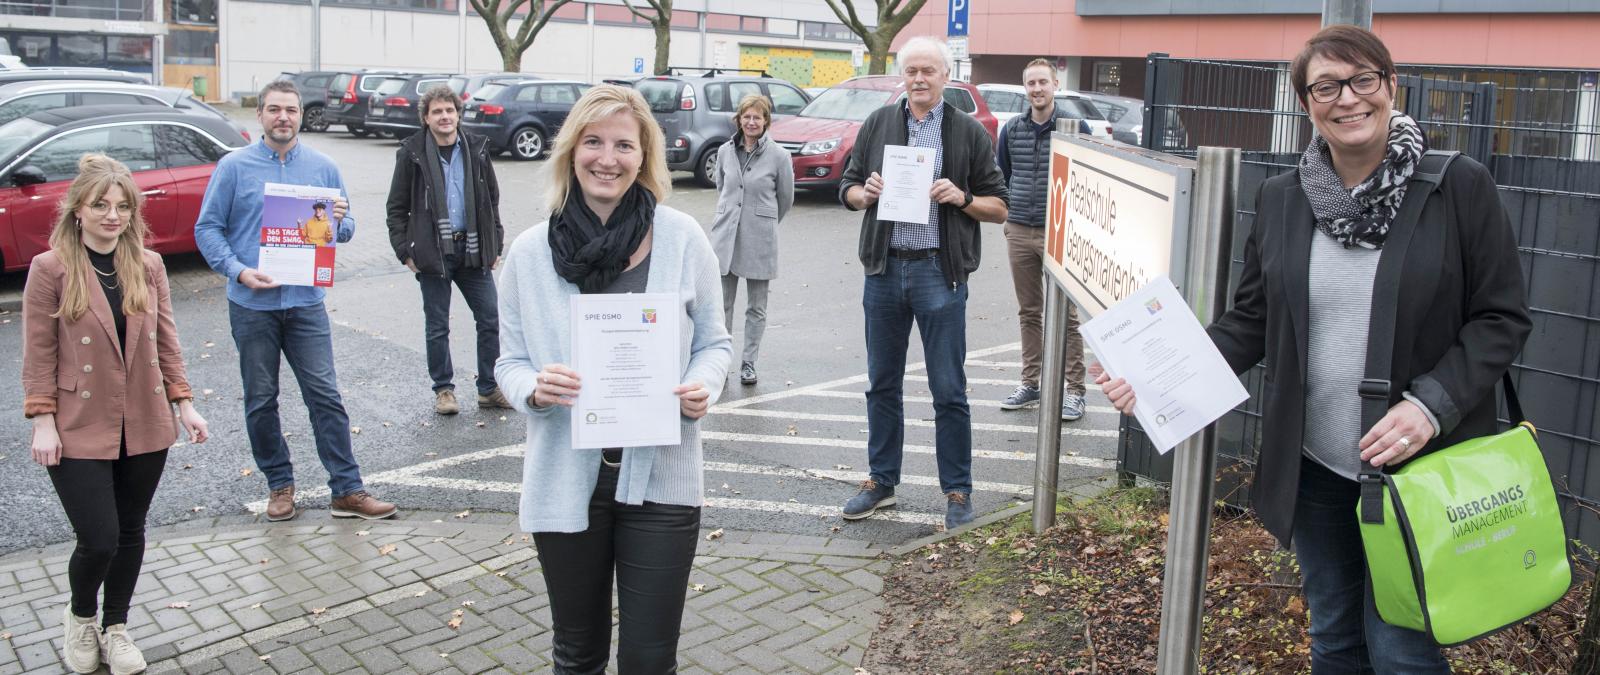 Realschule Georgsmarienhütte und die SPIE OSMO GmbH unterschreiben Kooperationsvertrag